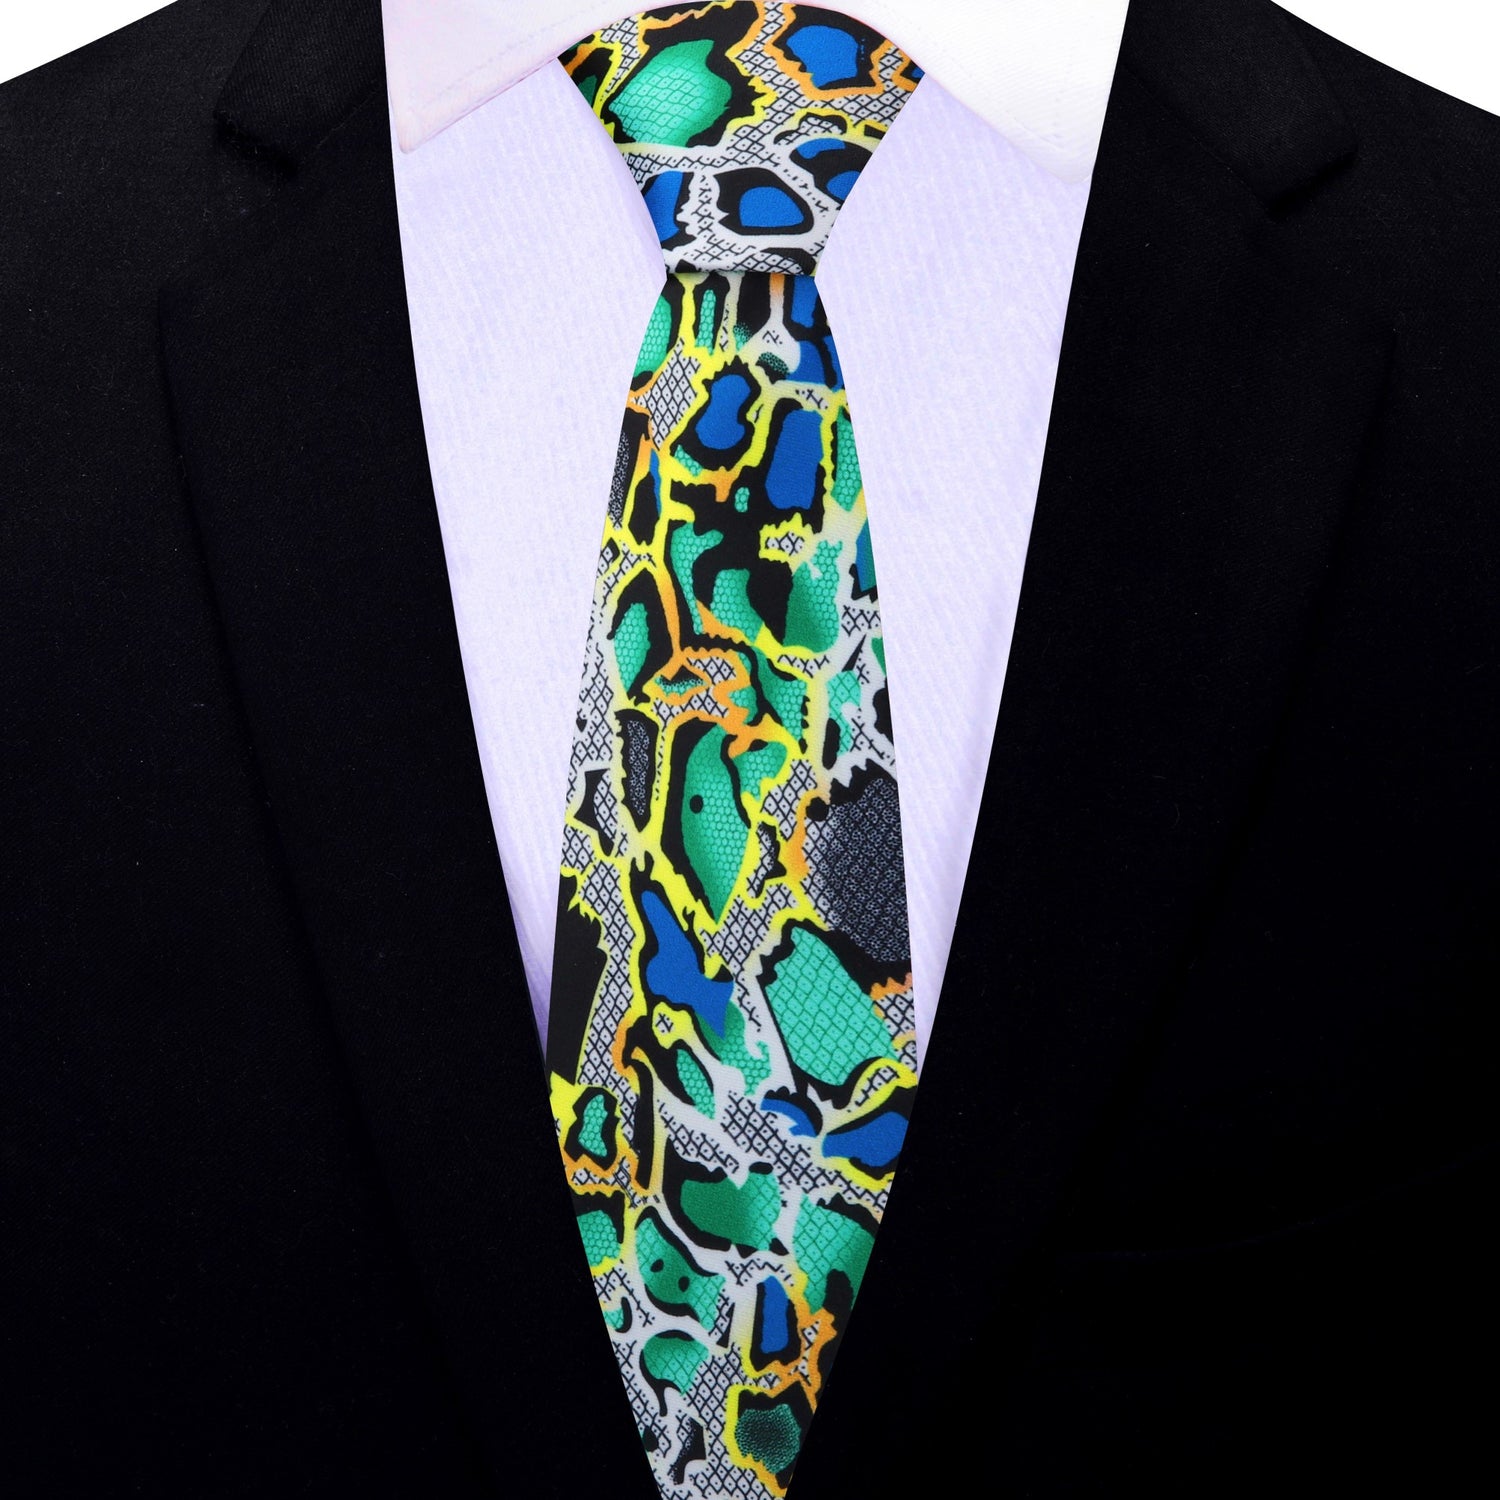 Thin Tie: Green, Yellow, Blue, Black, Grey Snakeskin Necktie